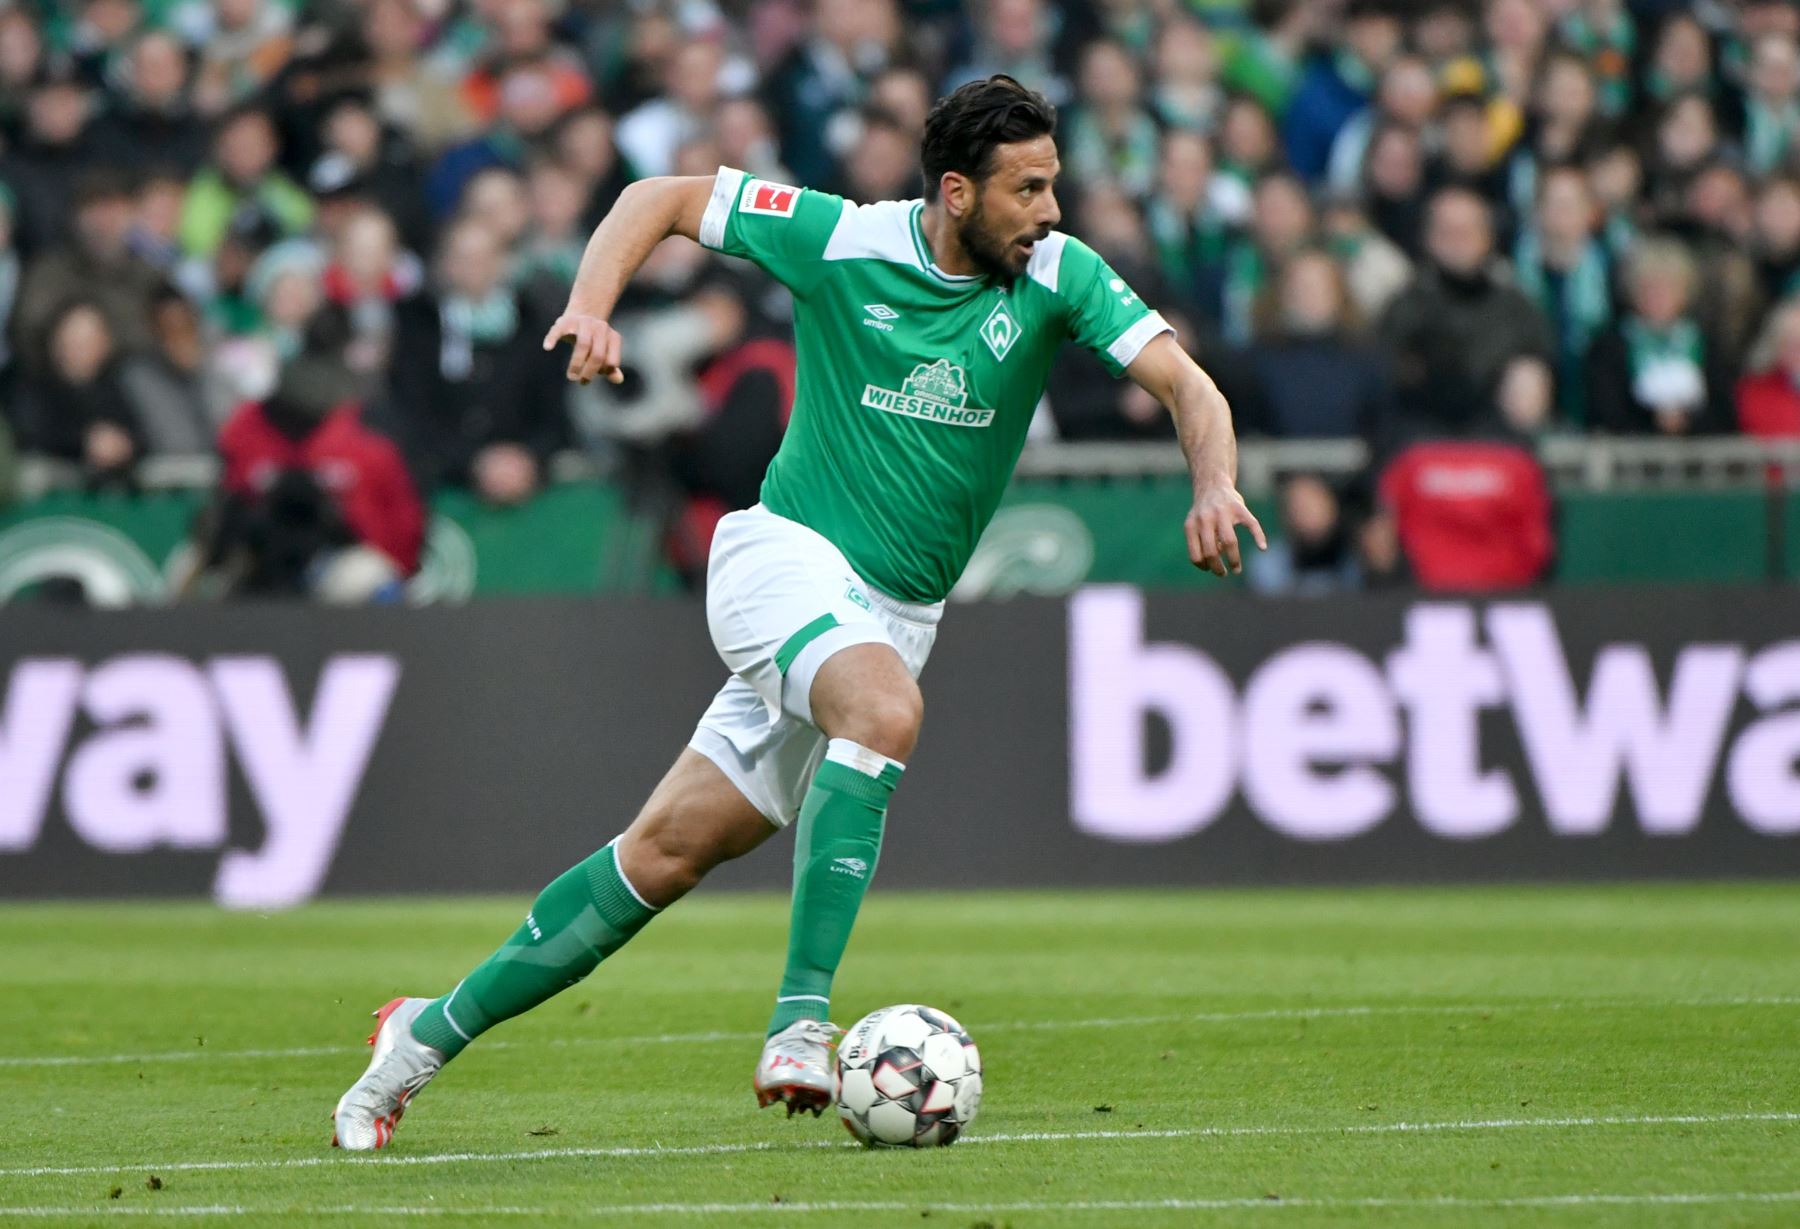 El delantero peruano de Bremen, Claudio Pizarro, corre con la pelota durante el partido de fútbol de primera división de la Bundesliga alemana Werder Bremen.
Foto:AFP